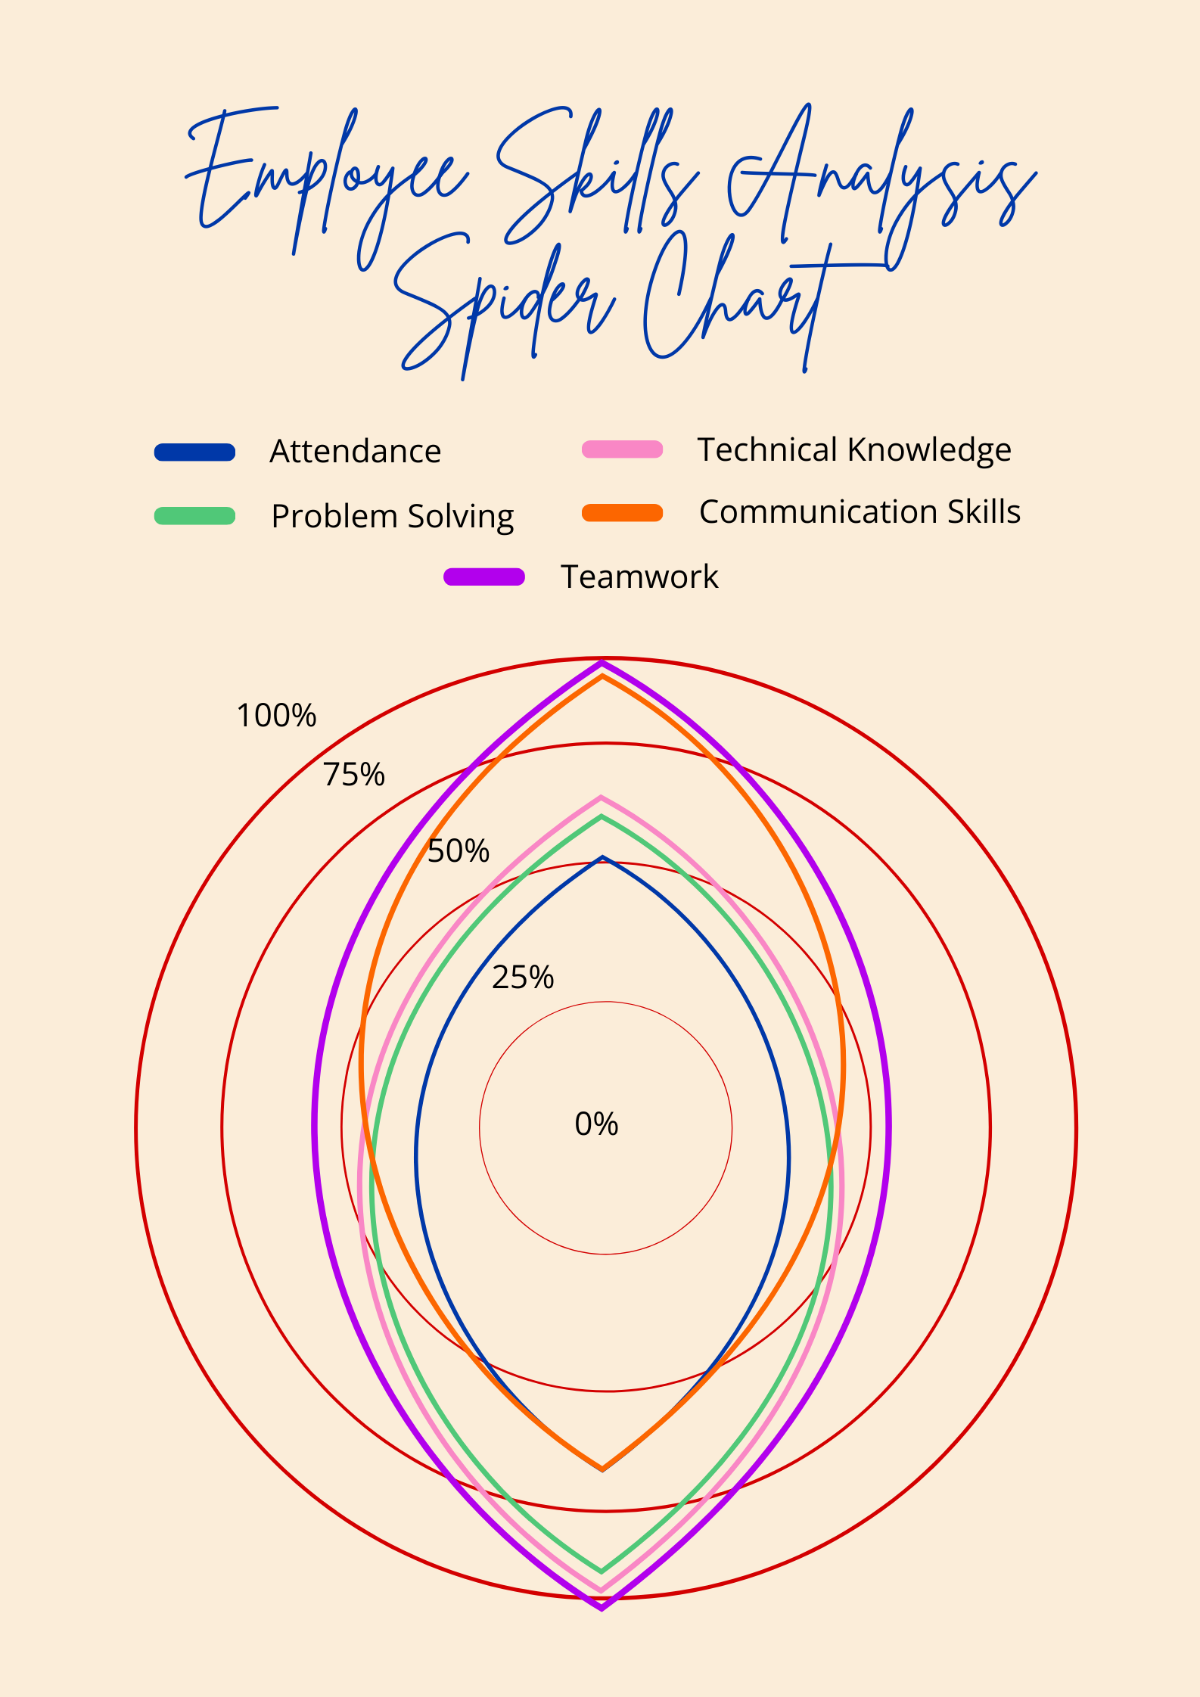 Employee Skills Analysis Spider Chart Template